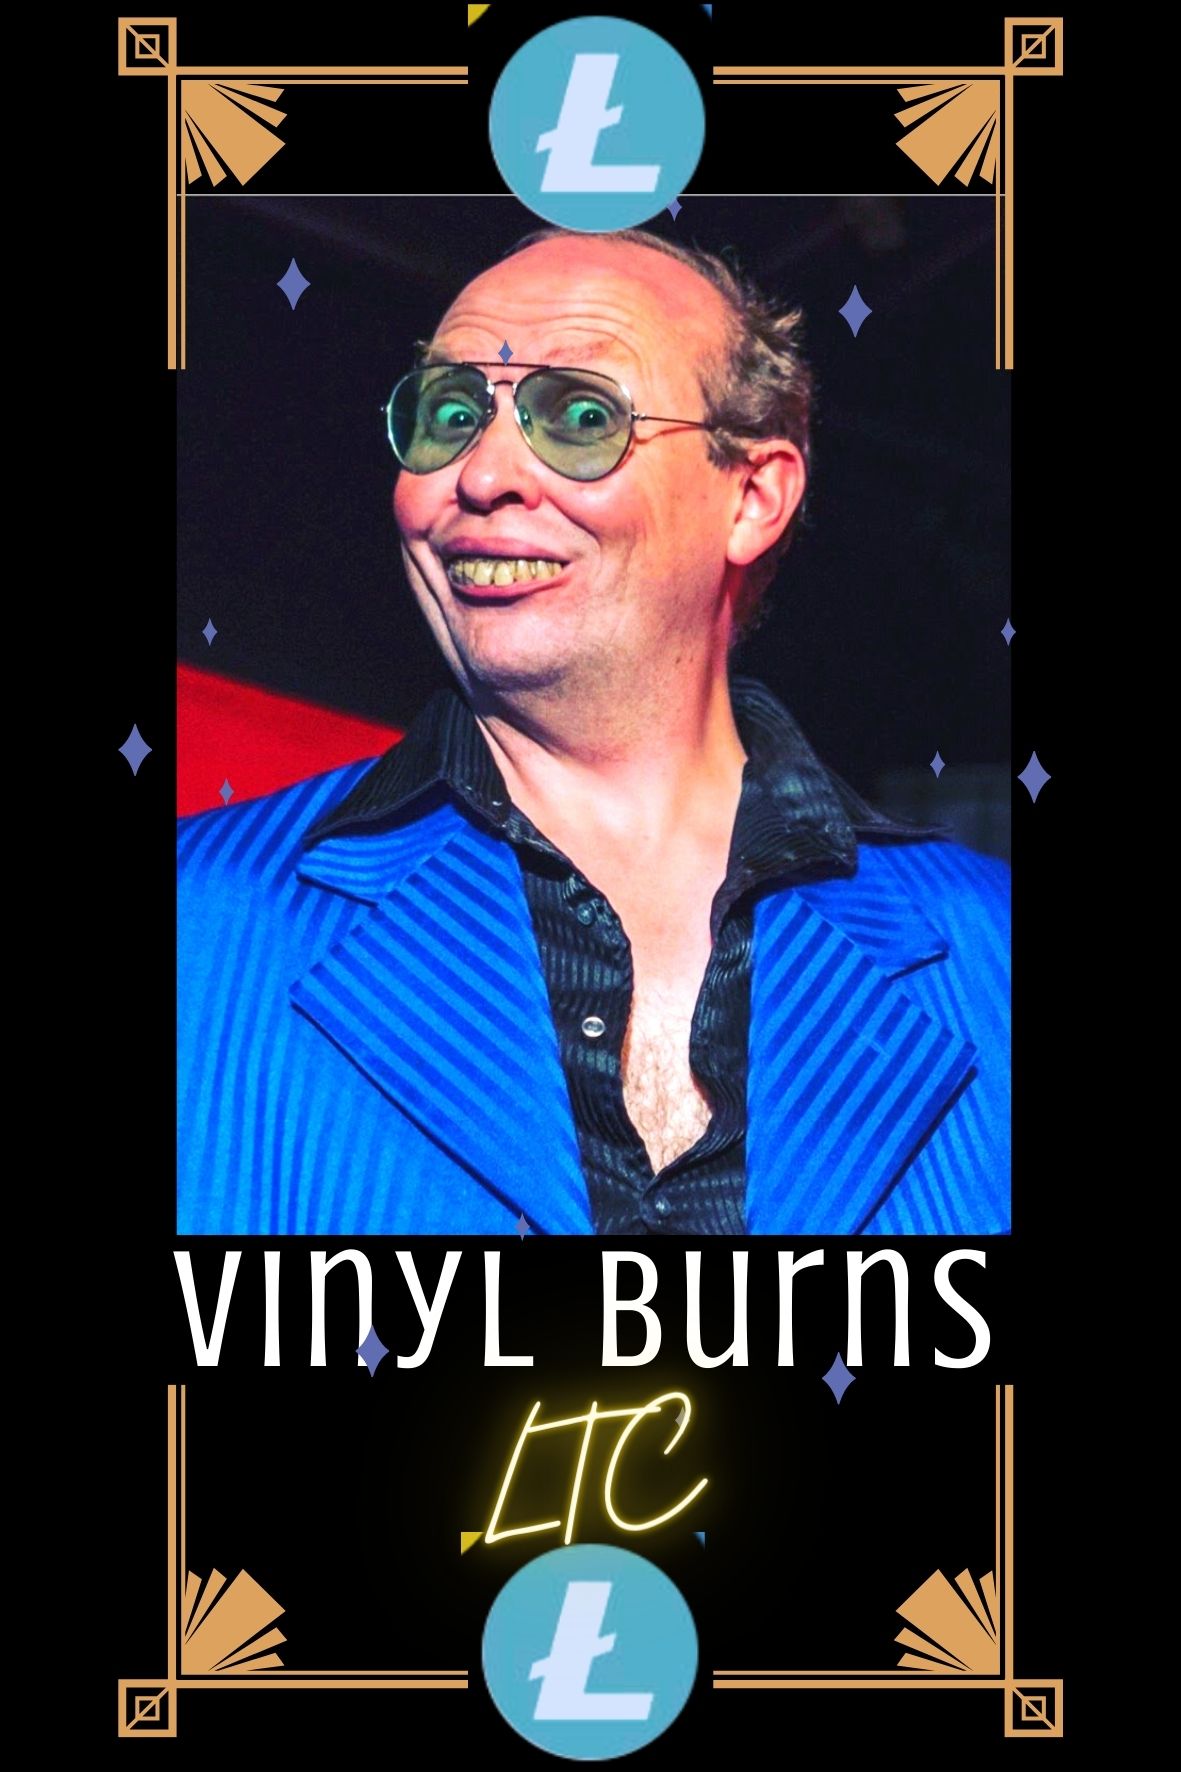 Vinyl Burns - LTC